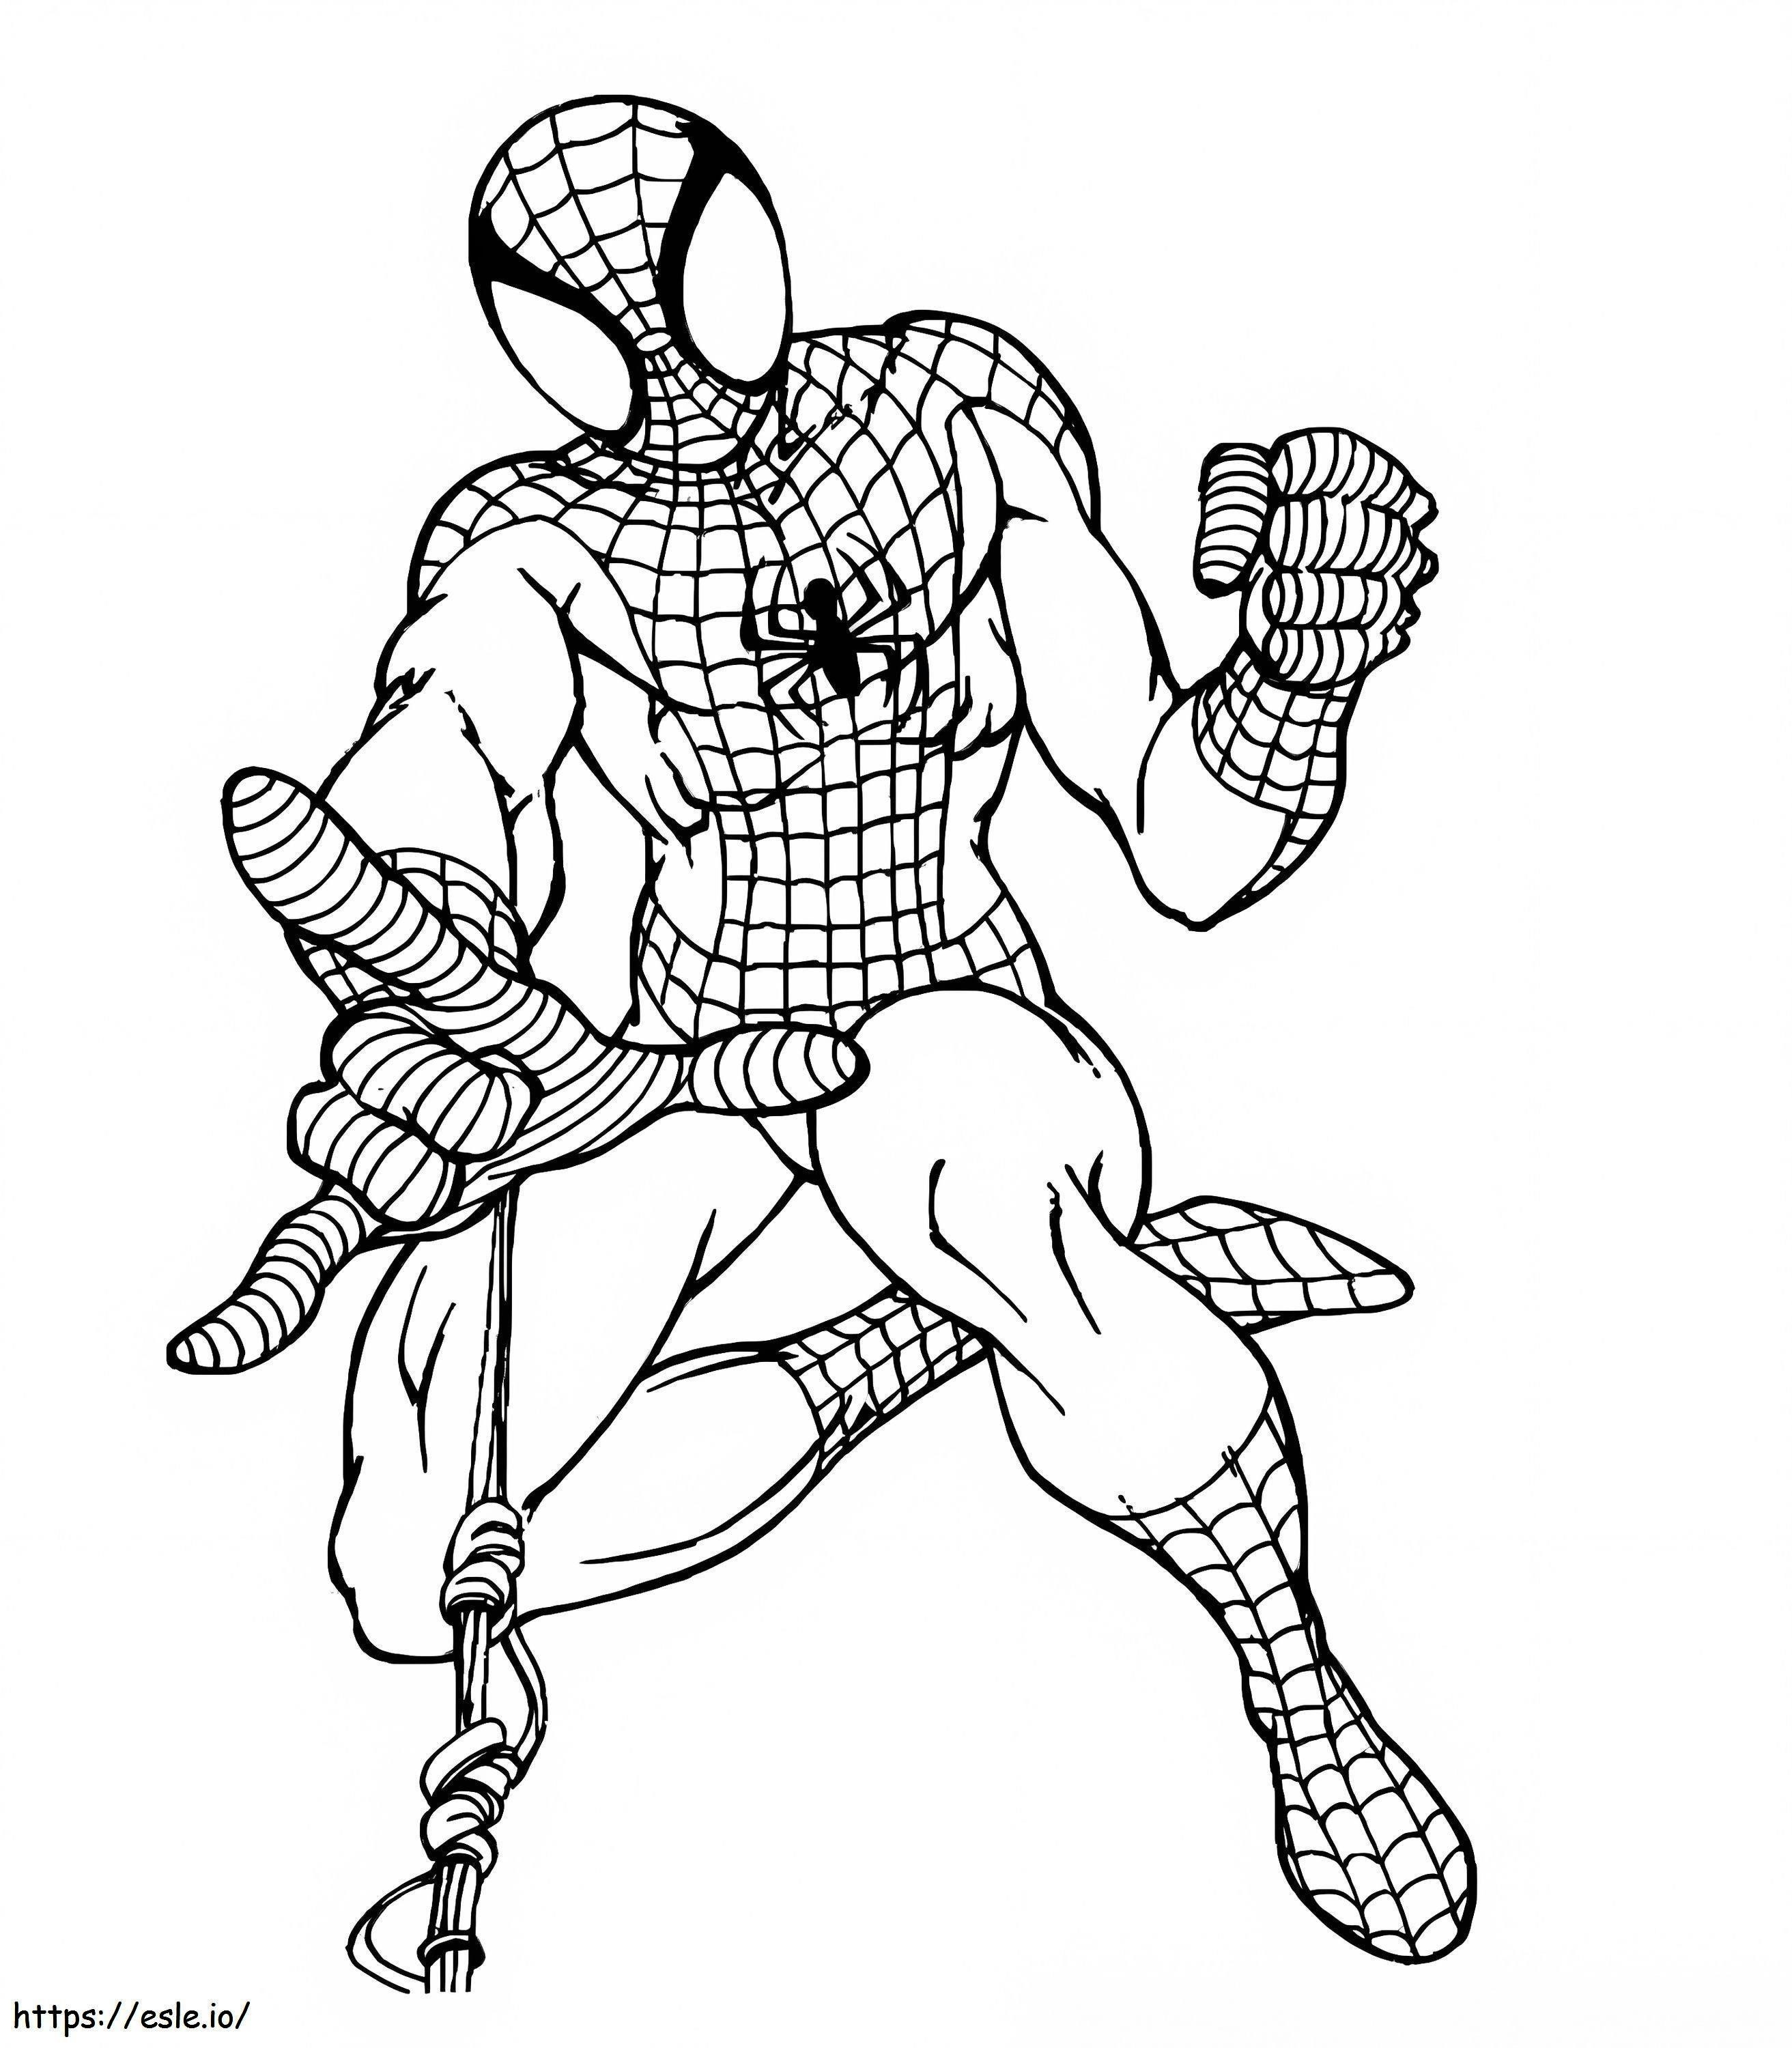 Desenho Simples do Homem Aranha para colorir